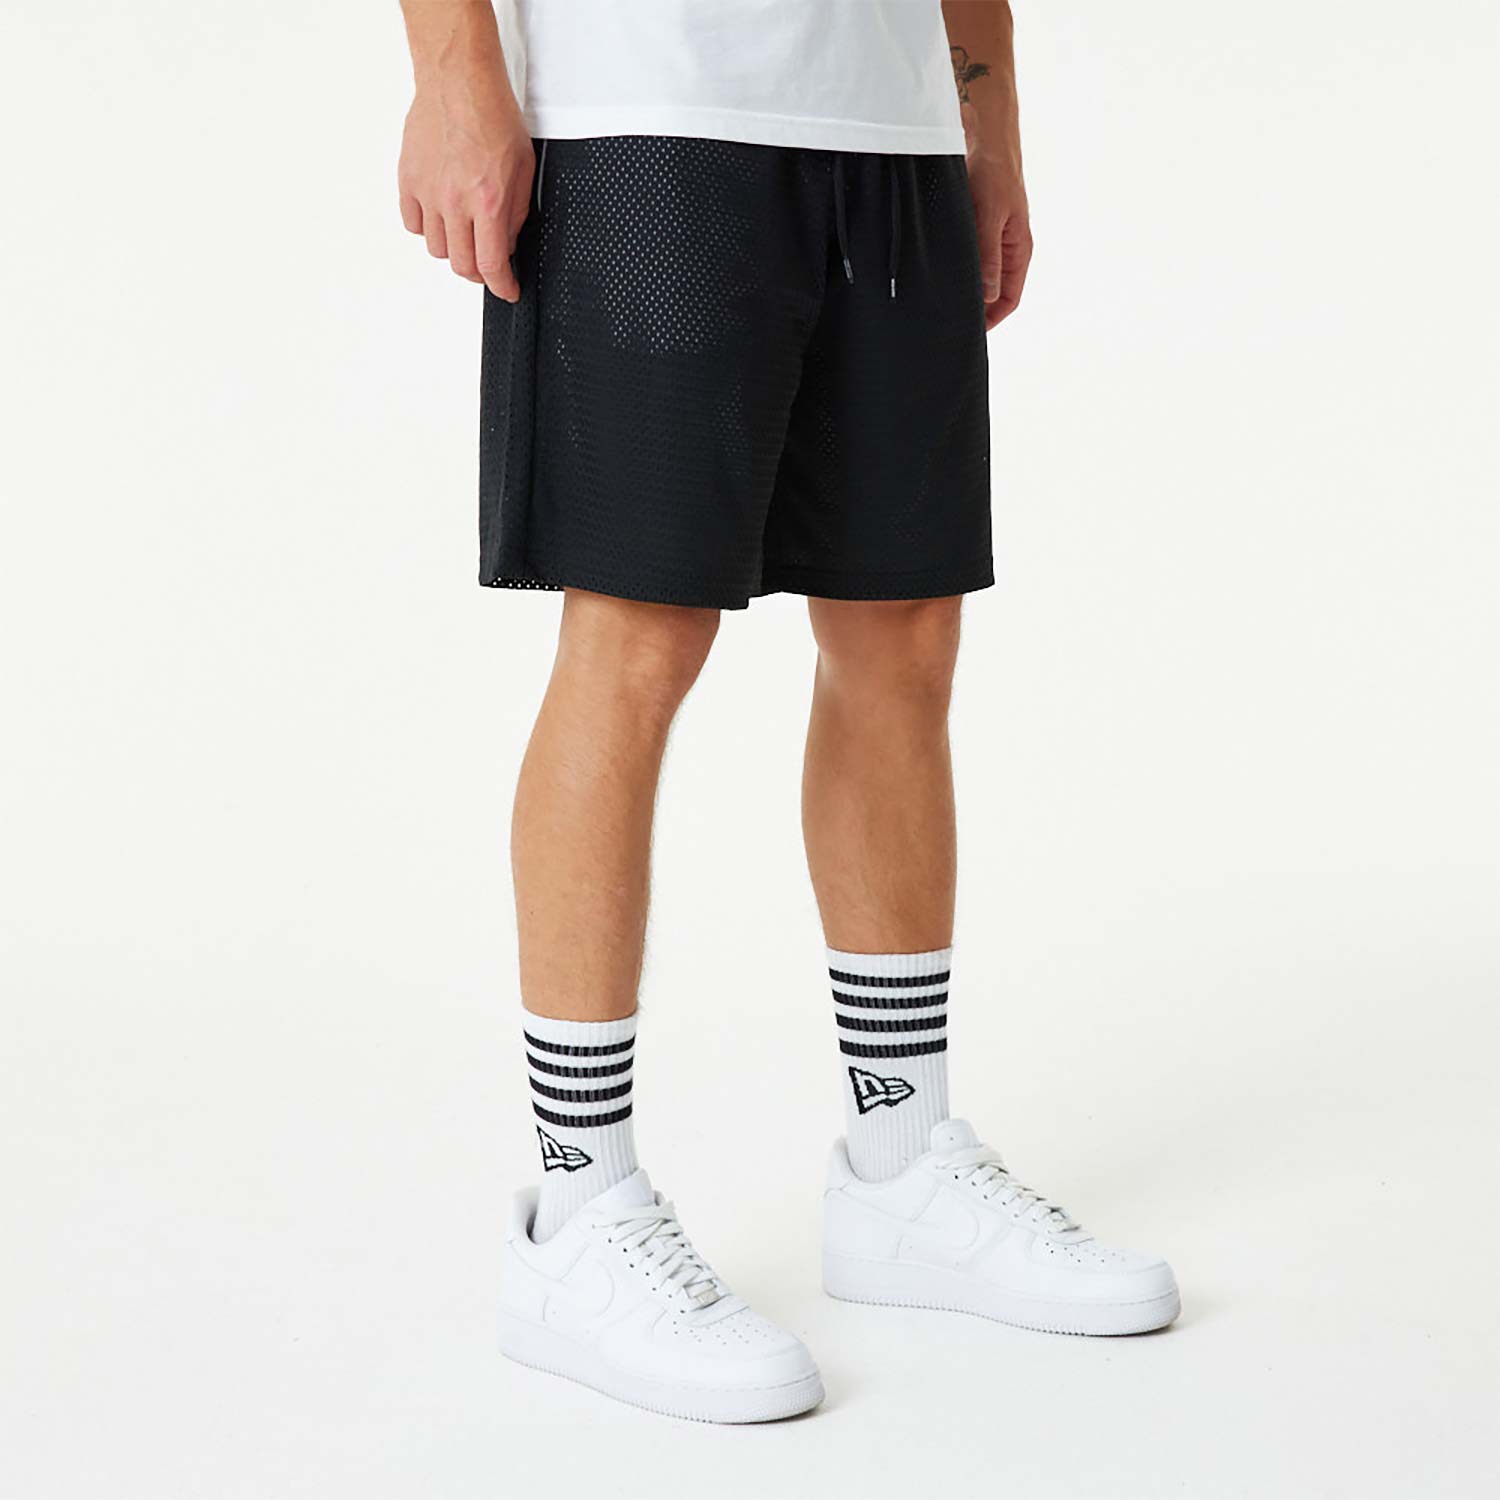 New Era Black And White Mesh Shorts